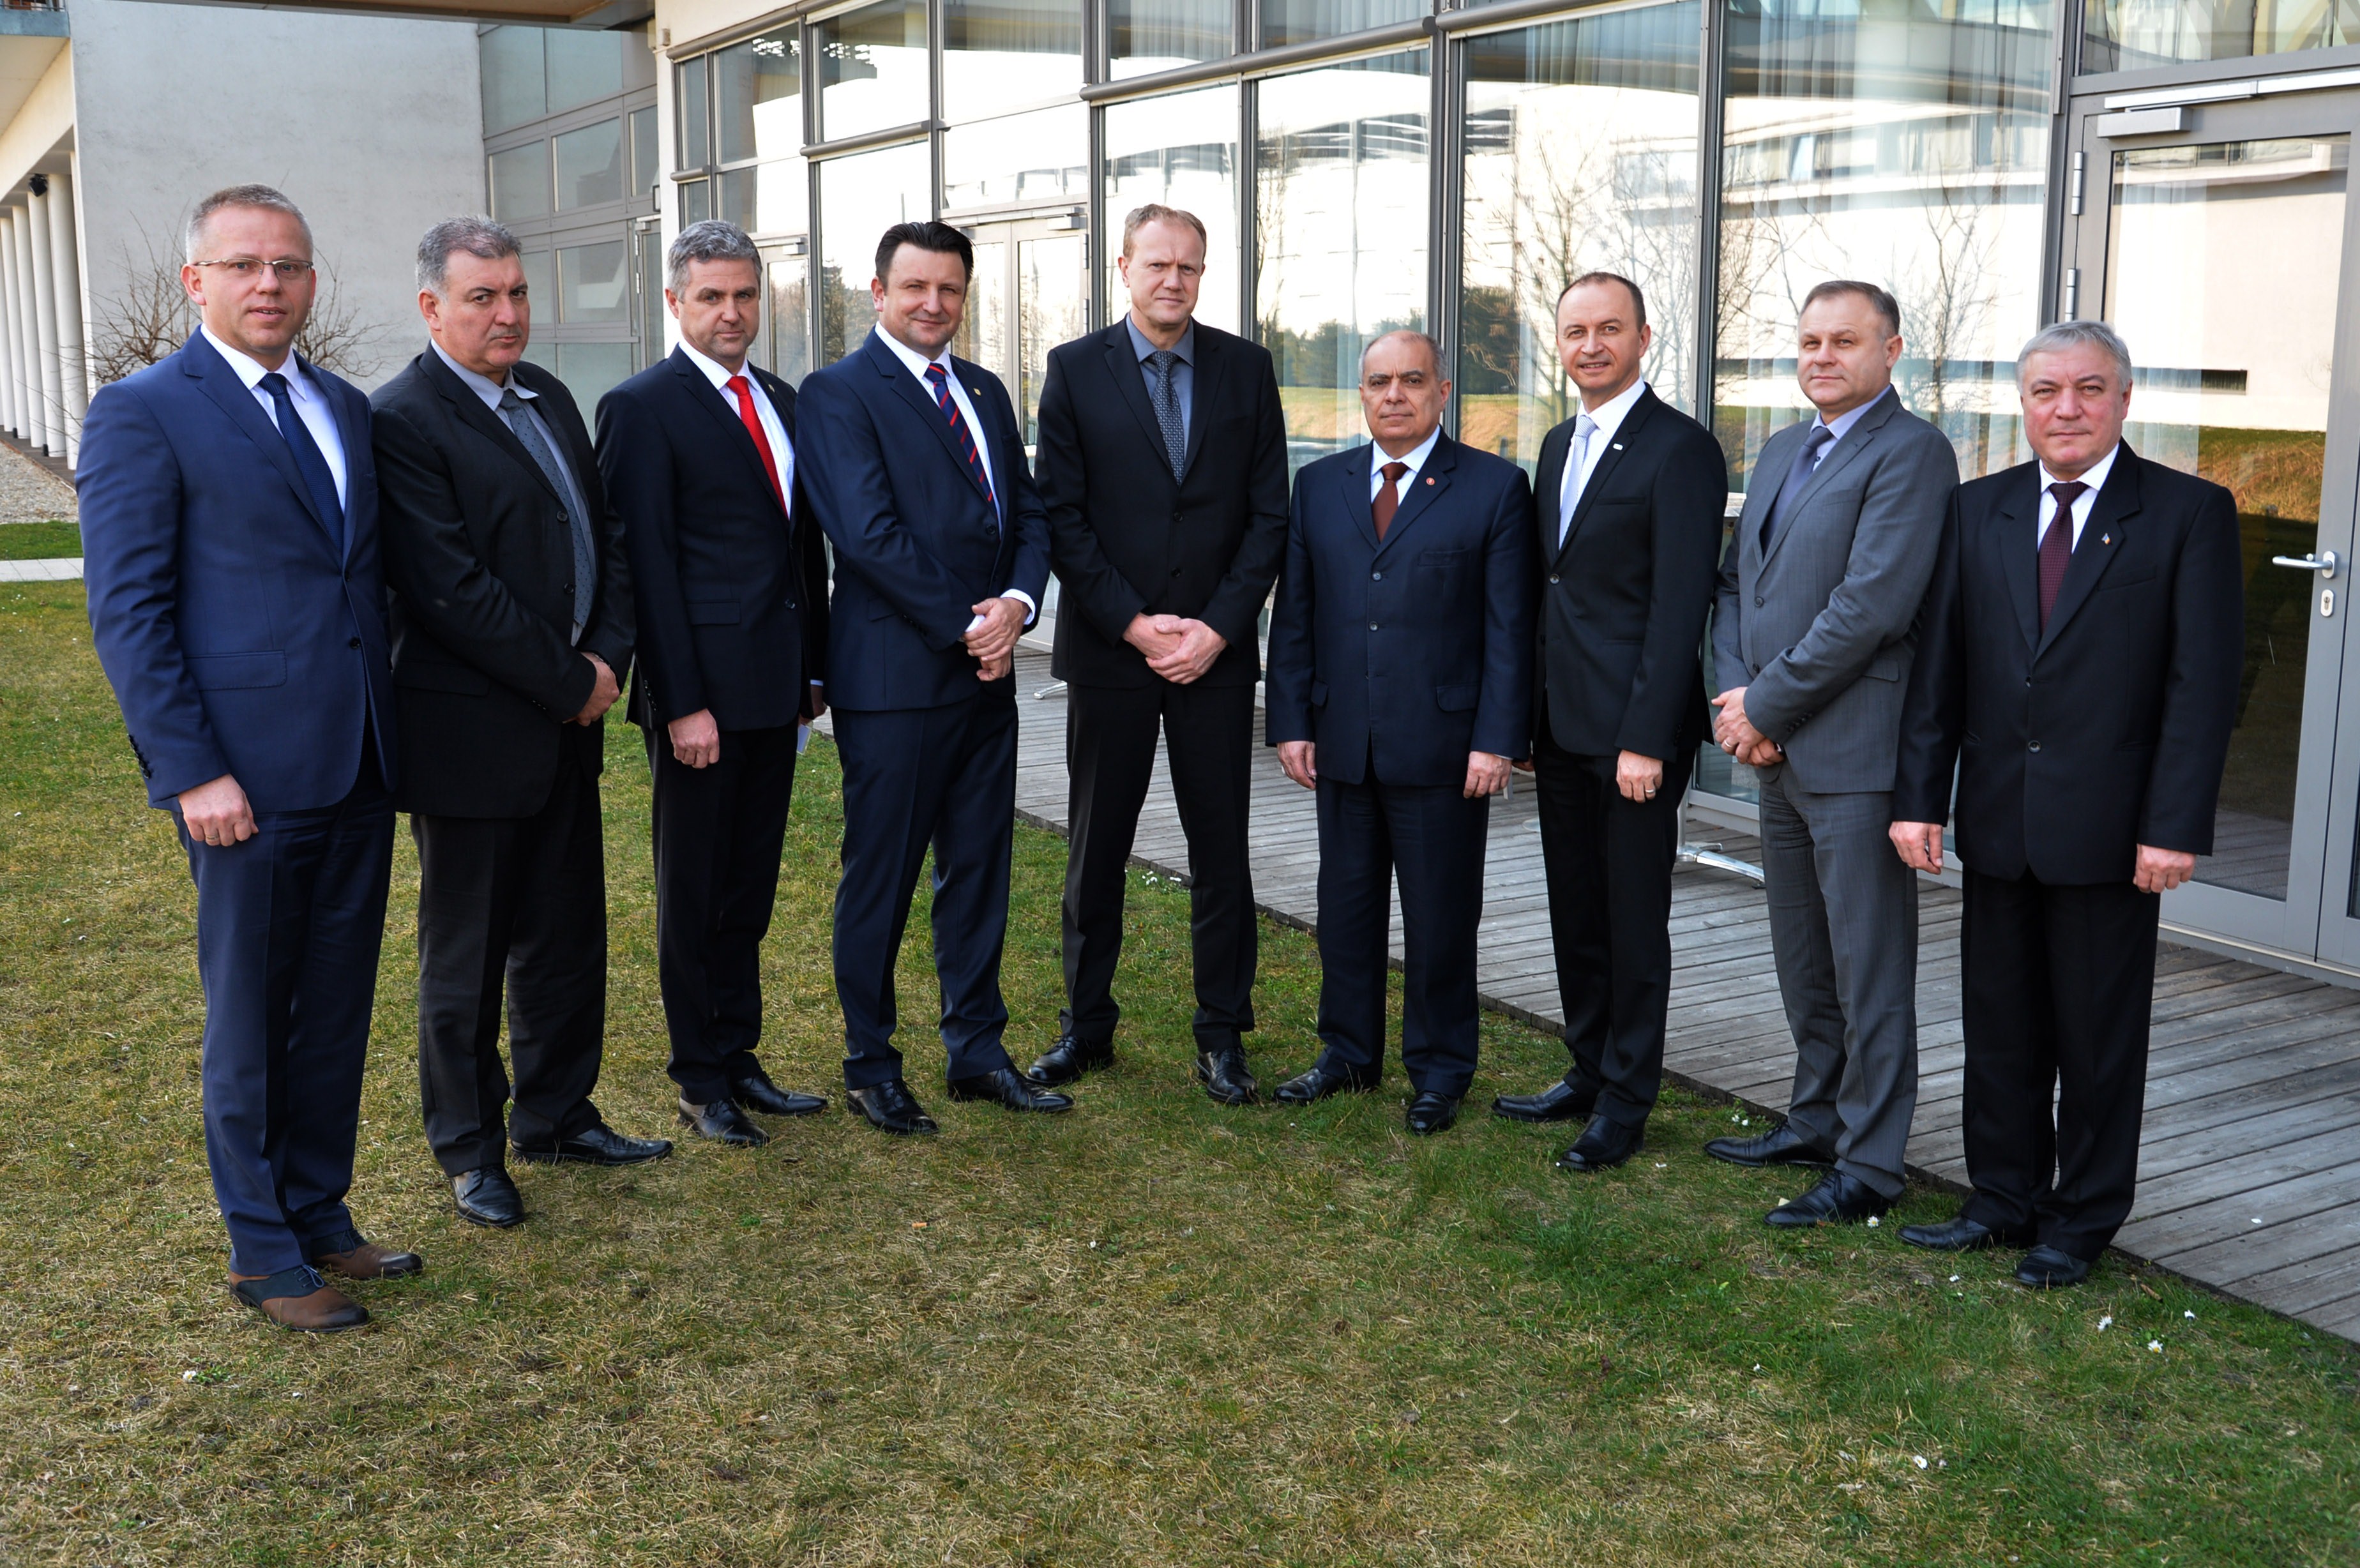 19/20 March 2015: Salzburg Forum Police Chiefs Meeting in Laa an der Thaya, Austria